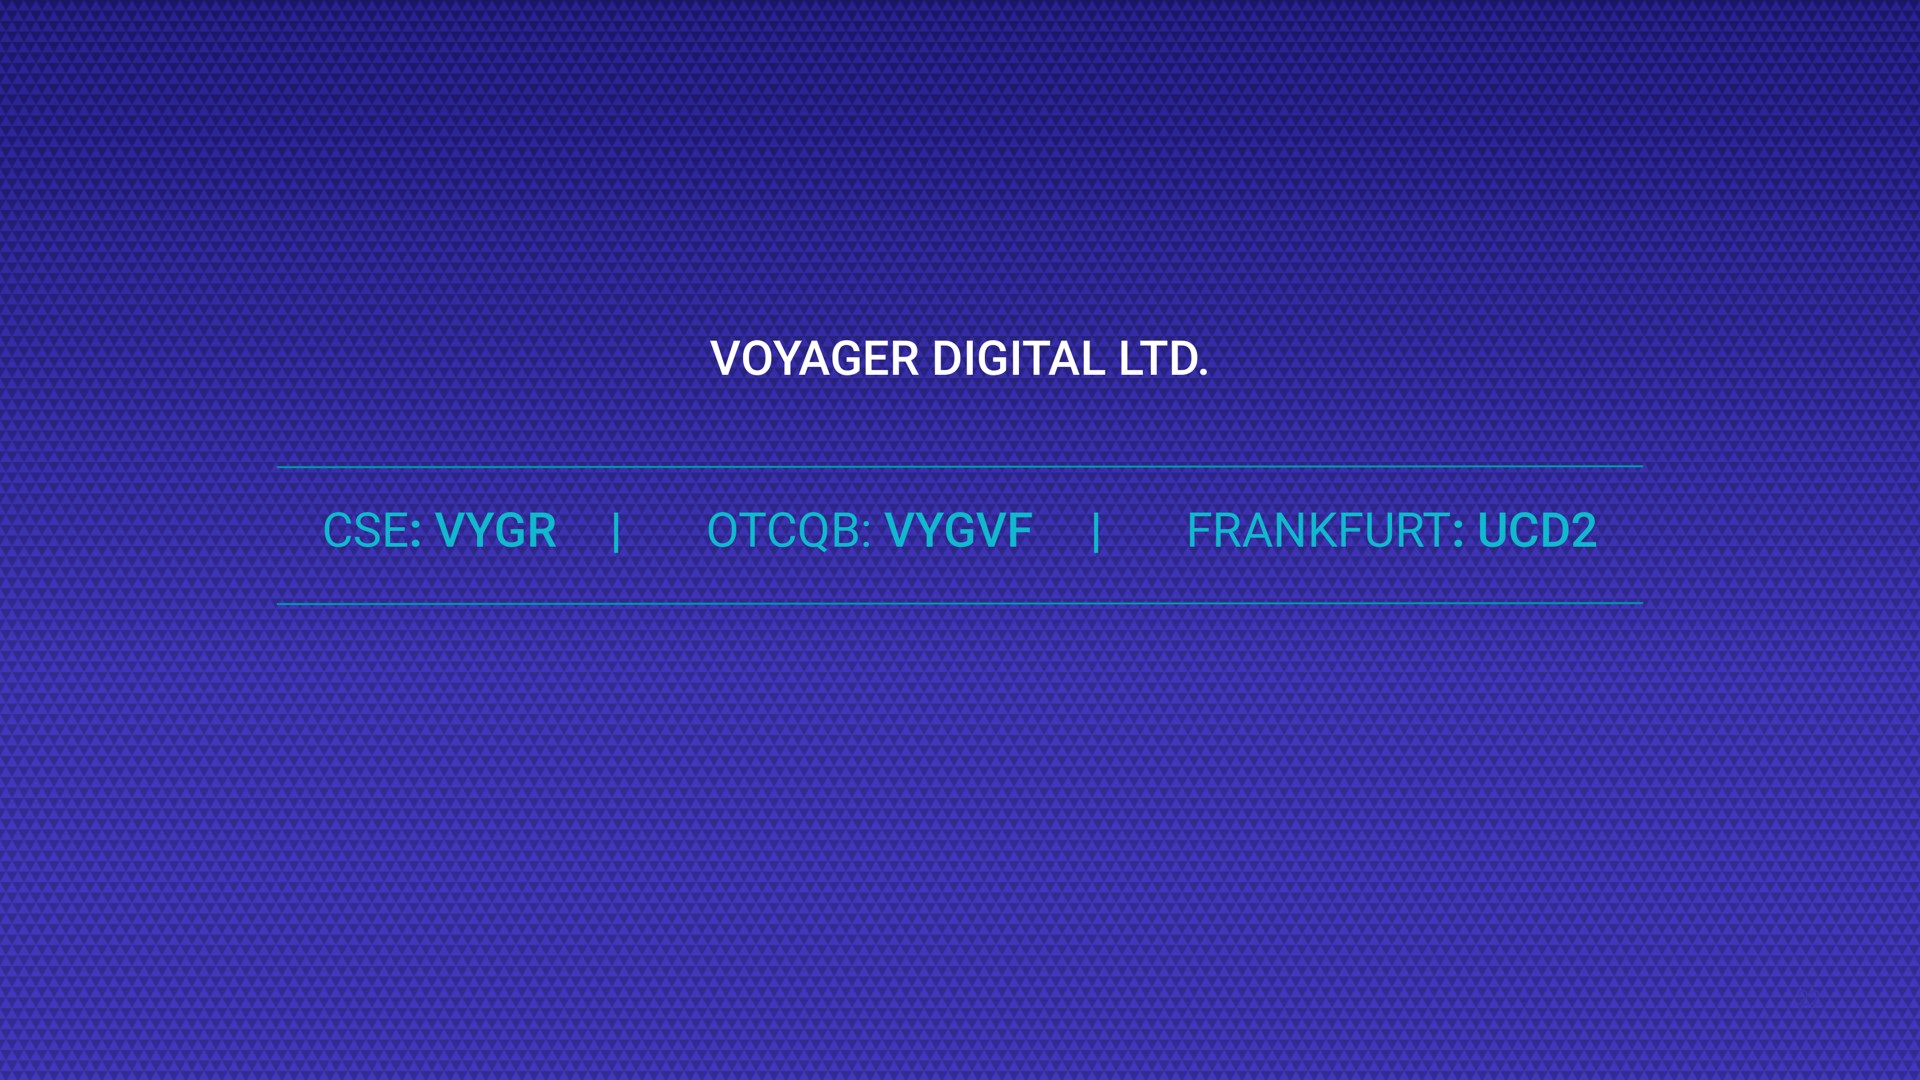 voyager digital | Voyager Digital